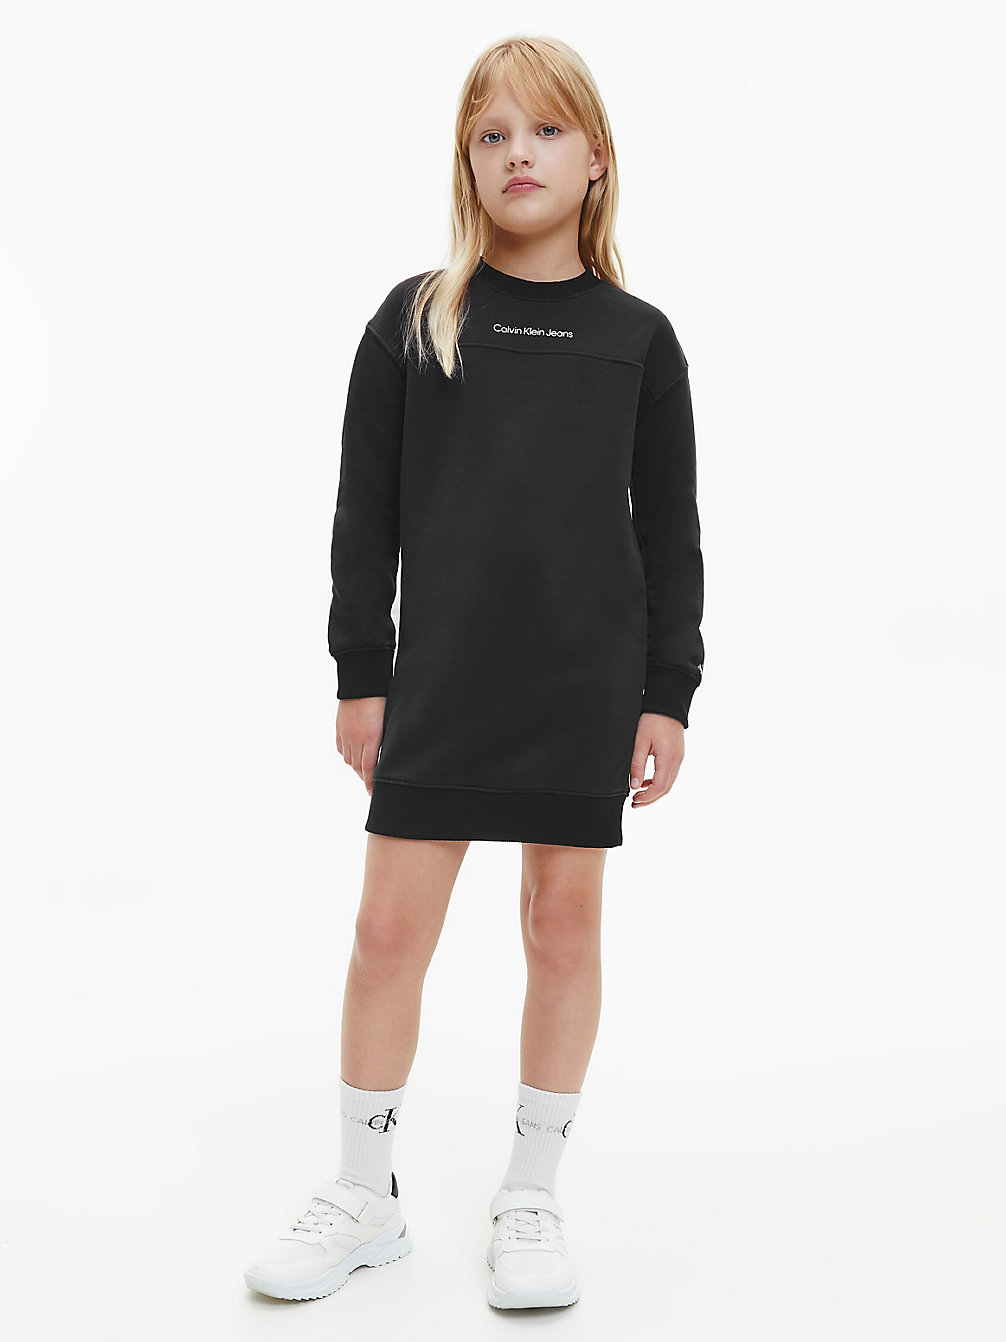 CK BLACK Sweatshirt Dress undefined girls Calvin Klein